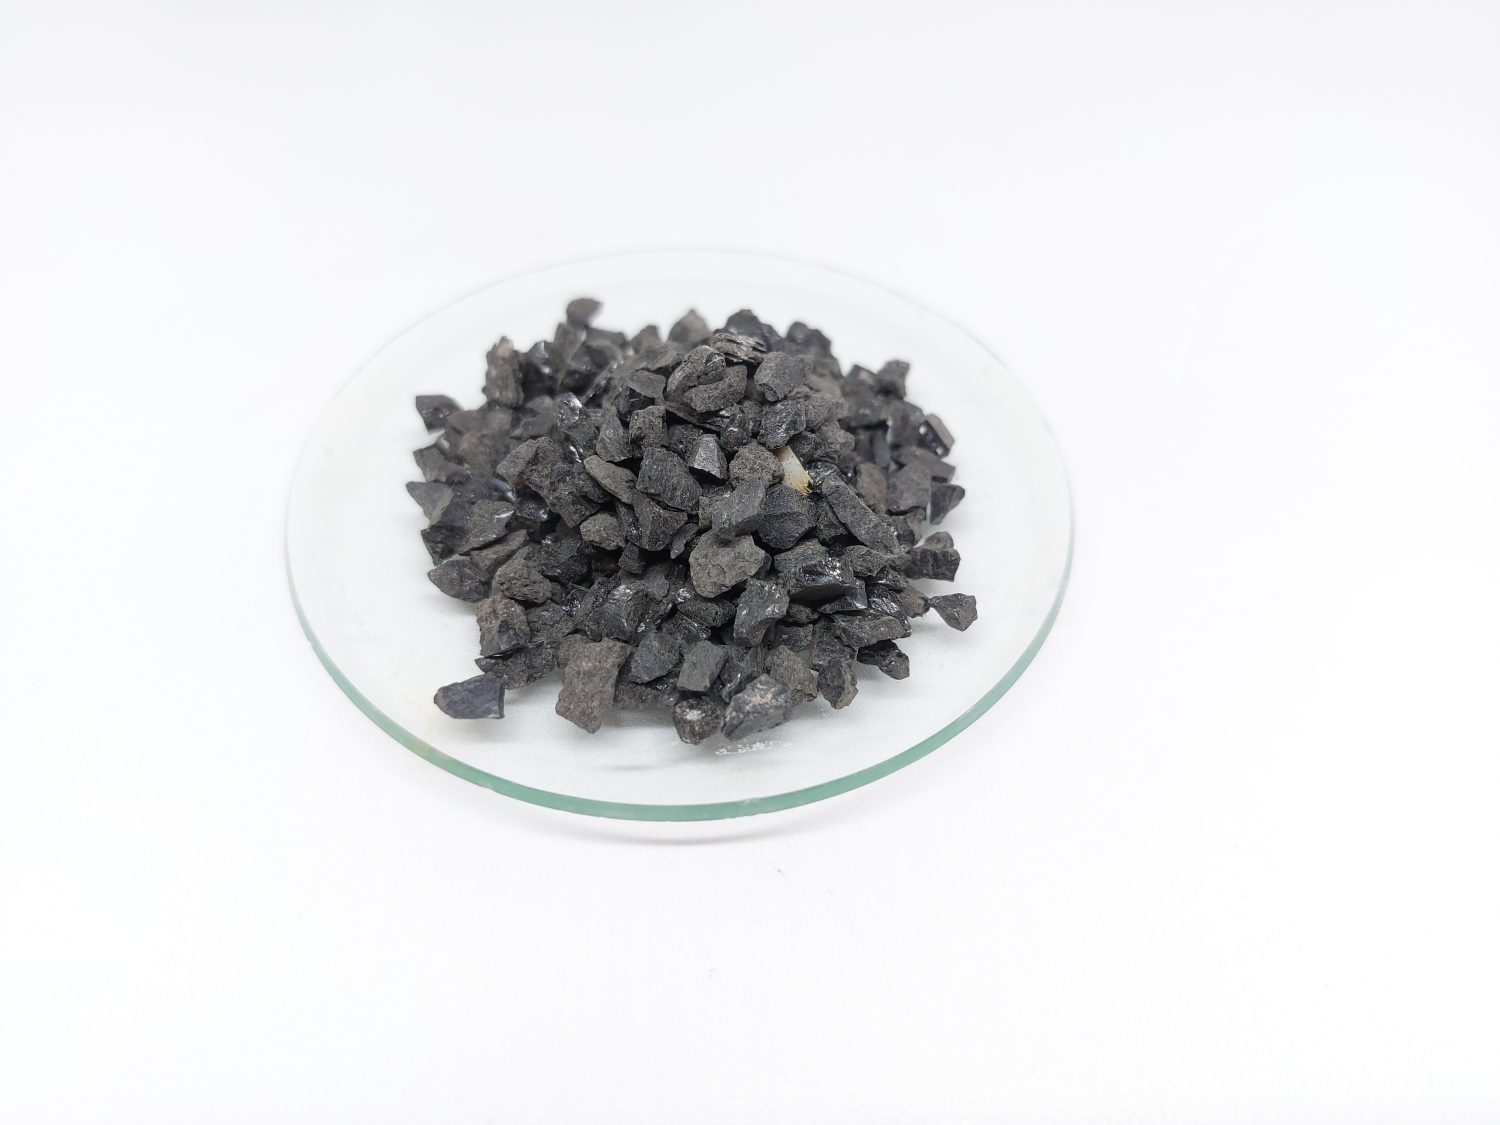 Antracite comunemente utilizzata nella filtrazione dell'acqua per rimuovere le impurità e migliorare la qualità dell'acqua.  L'antracite conosciuta come carbone nero duro è una varietà compatta di carbone.  Isolato su sfondo bianco